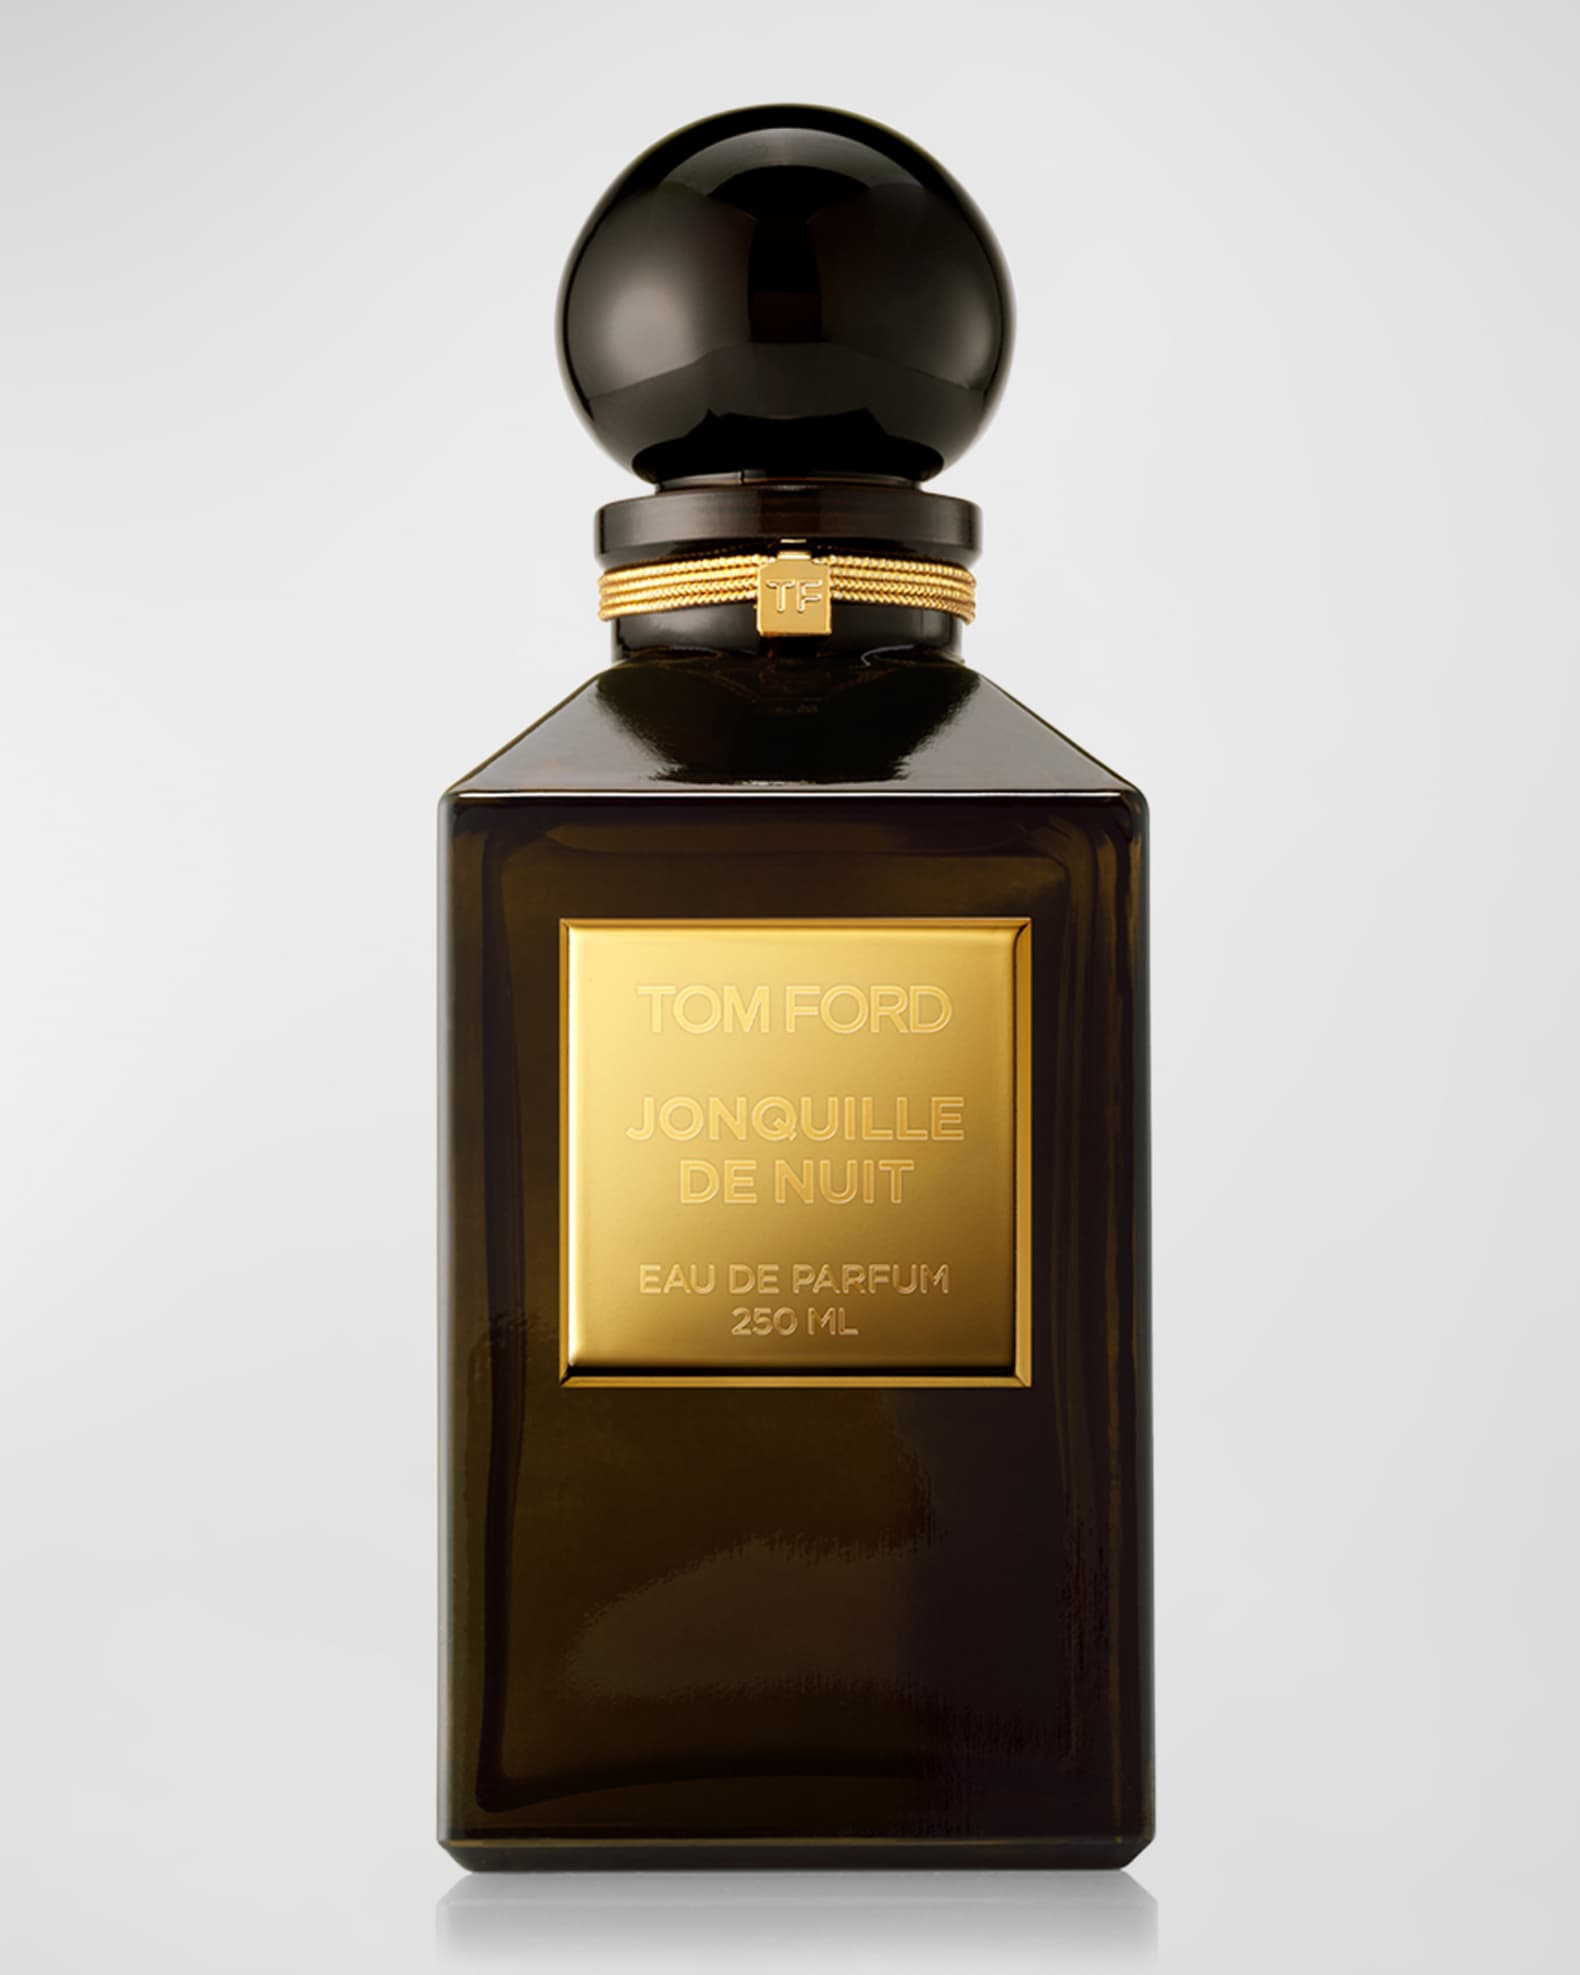 Tom Ford Jonquille de Nuit Eau de Parfum, 8.4 oz. - Private Blend Reserve Decanter